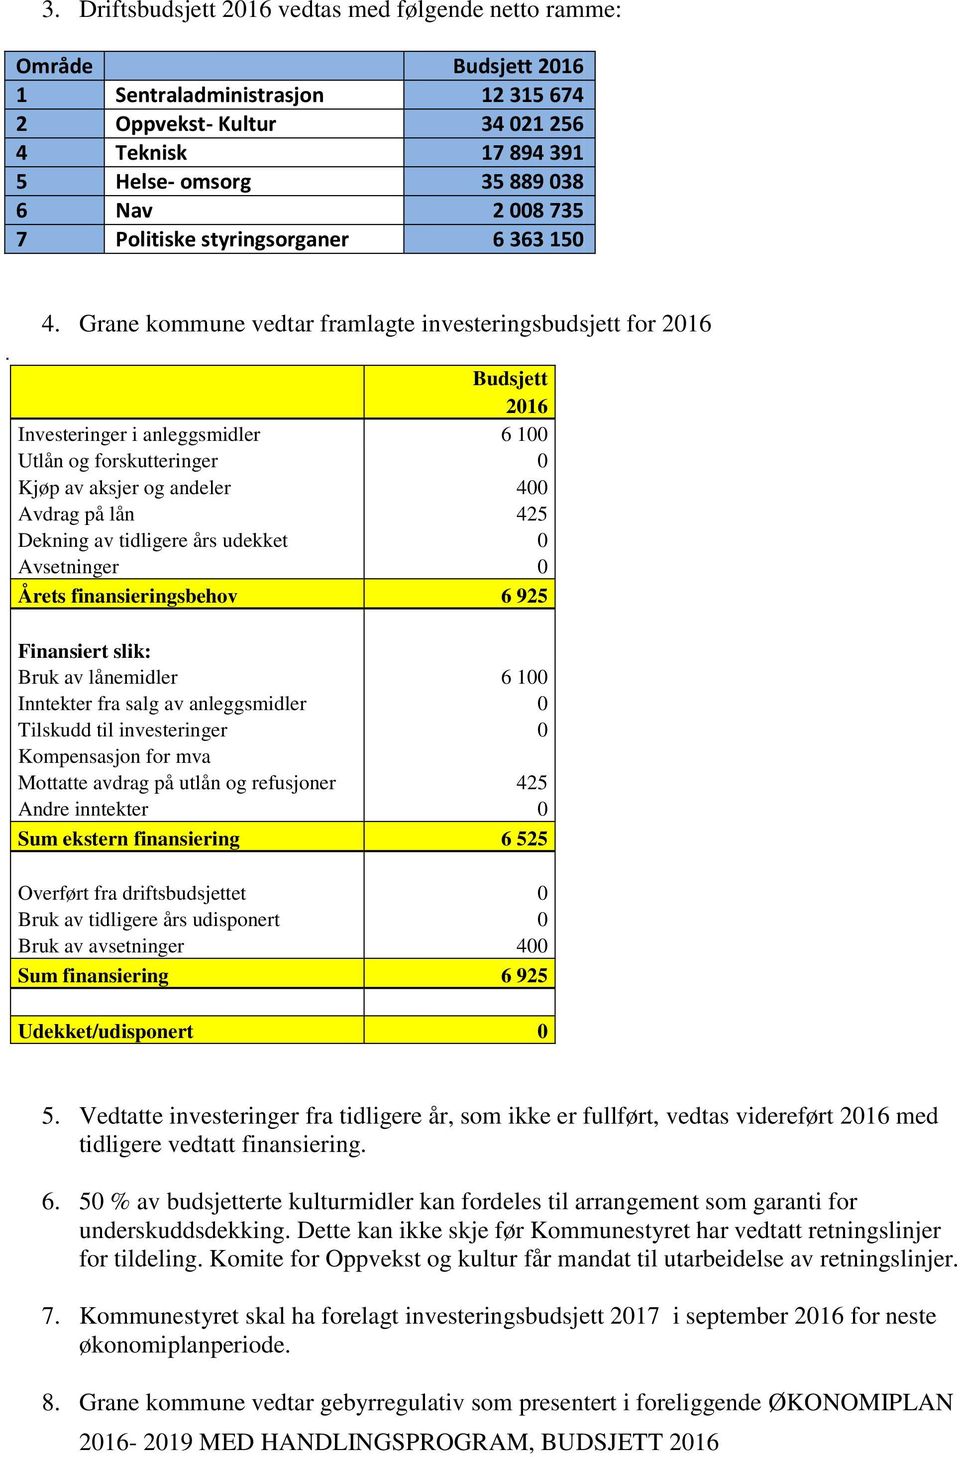 Grane kommune vedtar framlagte investeringsbudsjett for 2016 Budsjett 2016 Investeringer i anleggsmidler 6 100 Utlån og forskutteringer 0 Kjøp av aksjer og andeler 400 Avdrag på lån 425 Dekning av